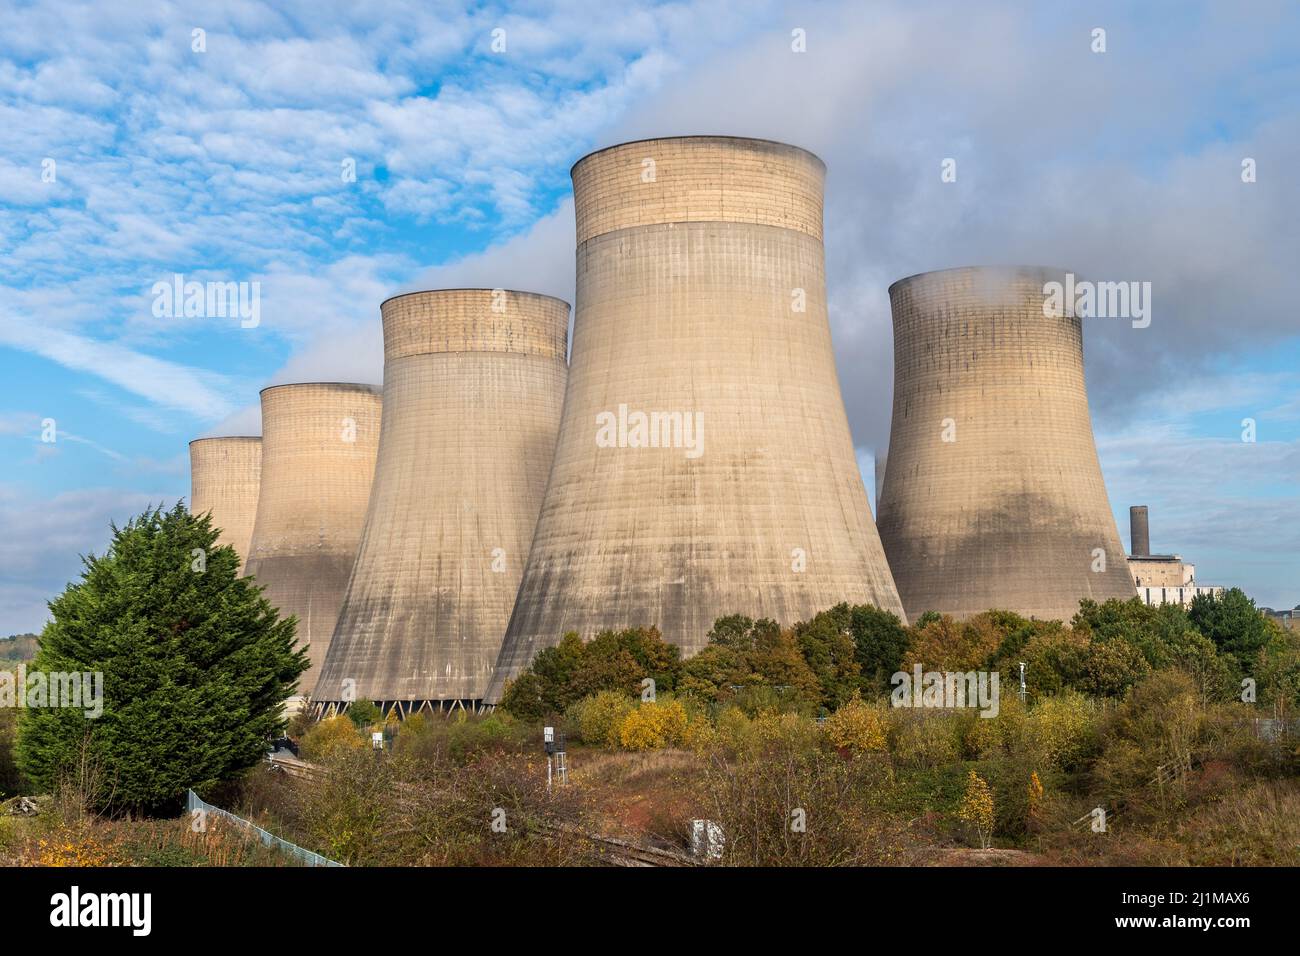 Ratcliffe Power Station, Ratcliffe on Soar, Nottingham, UK. Stock Photo